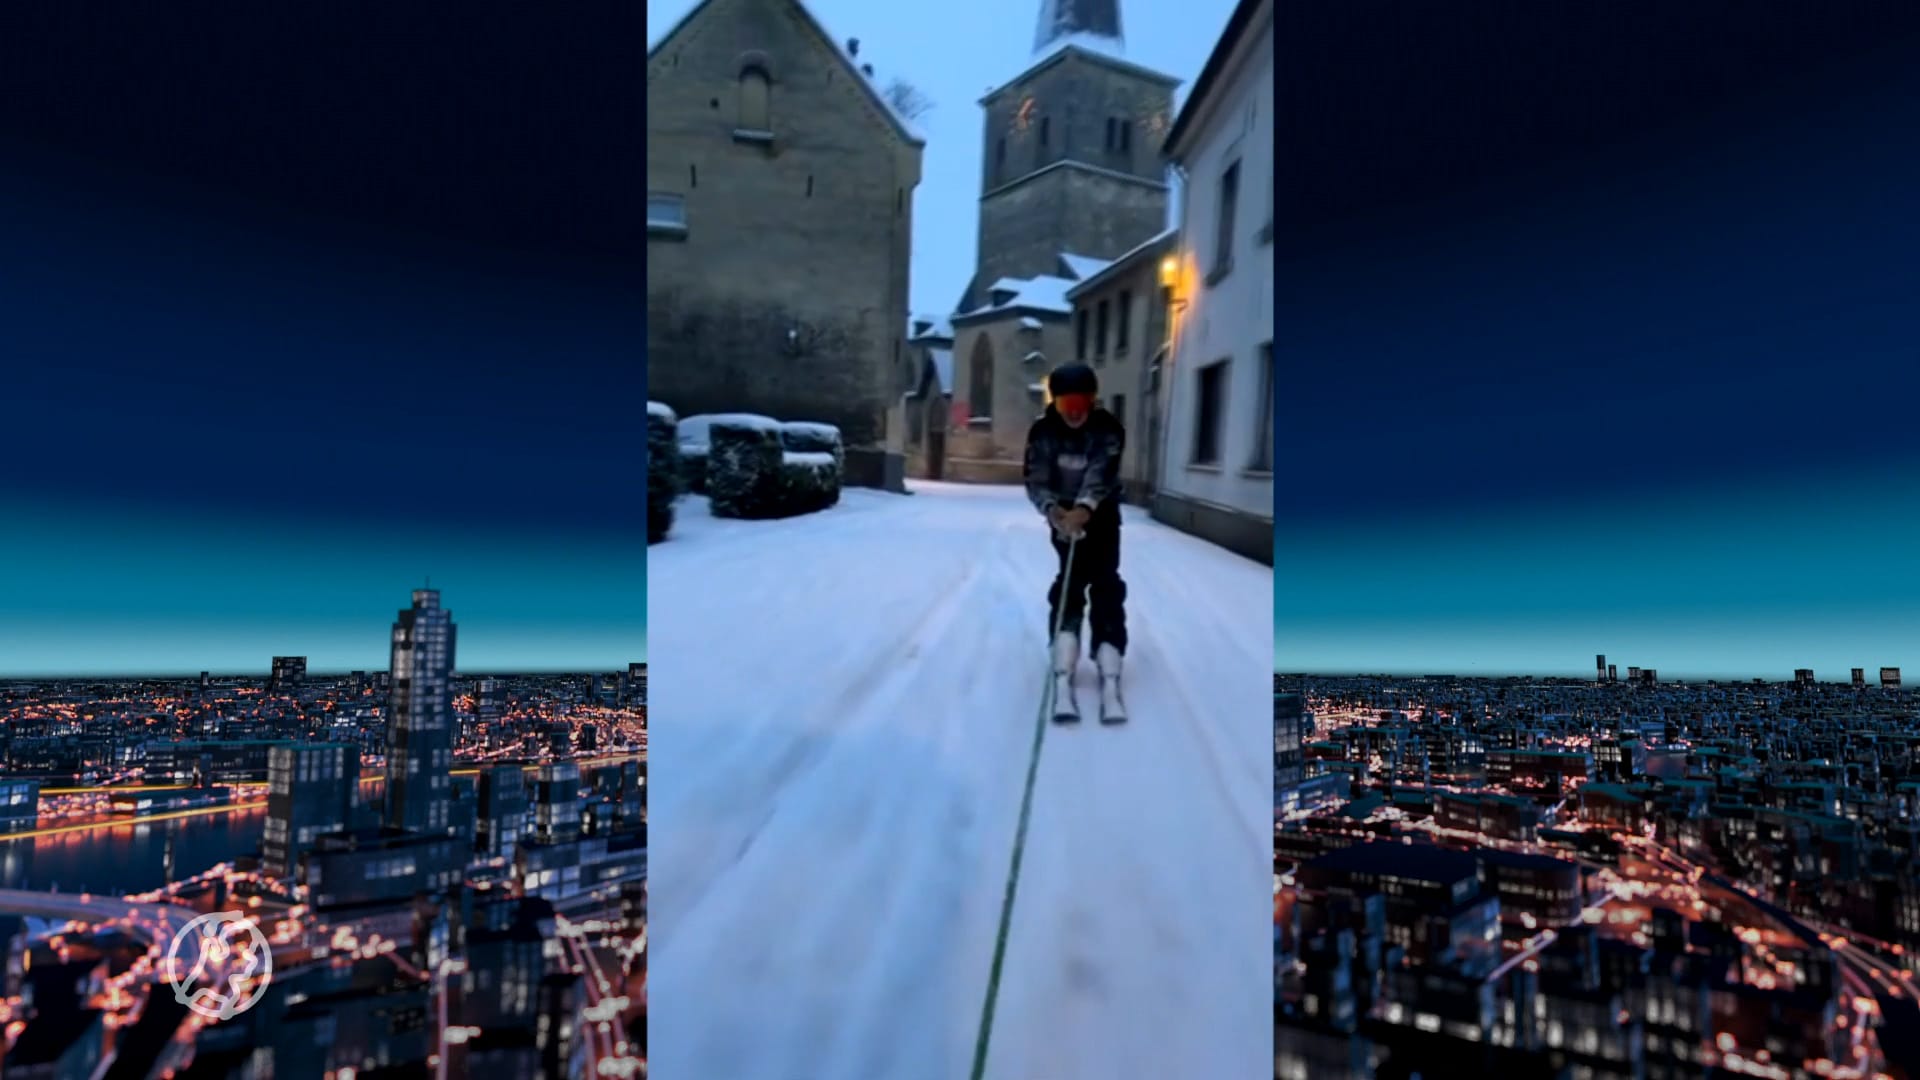 Valkenburg verandert in piste: jongen skiet door het centrum